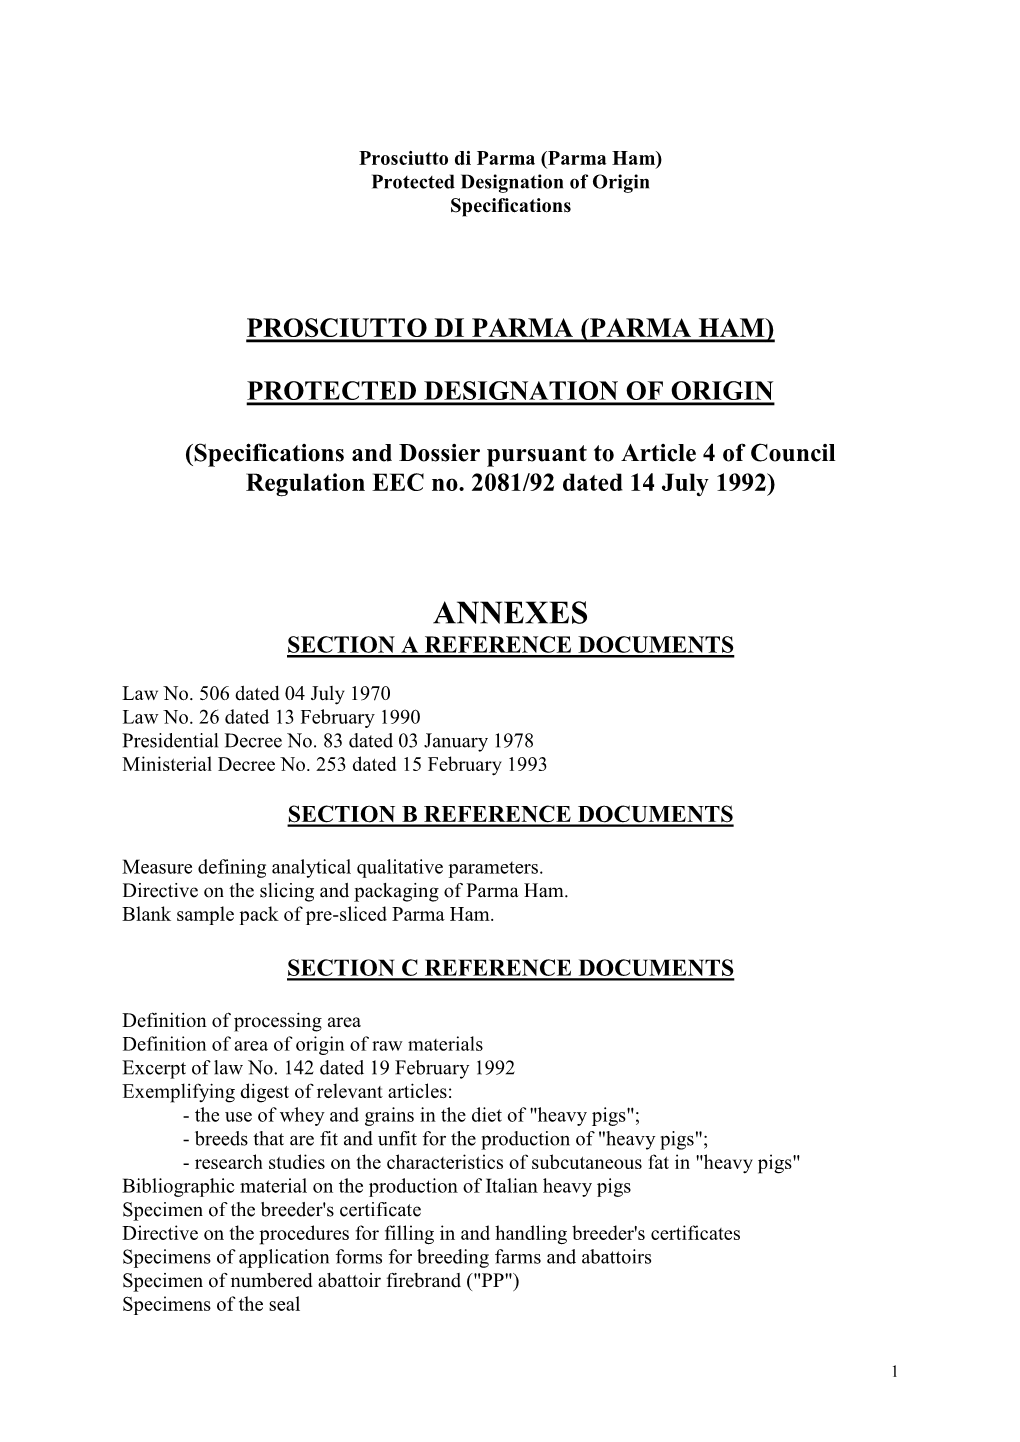 Parma (Parma Ham) Protected Designation of Origin Specifications